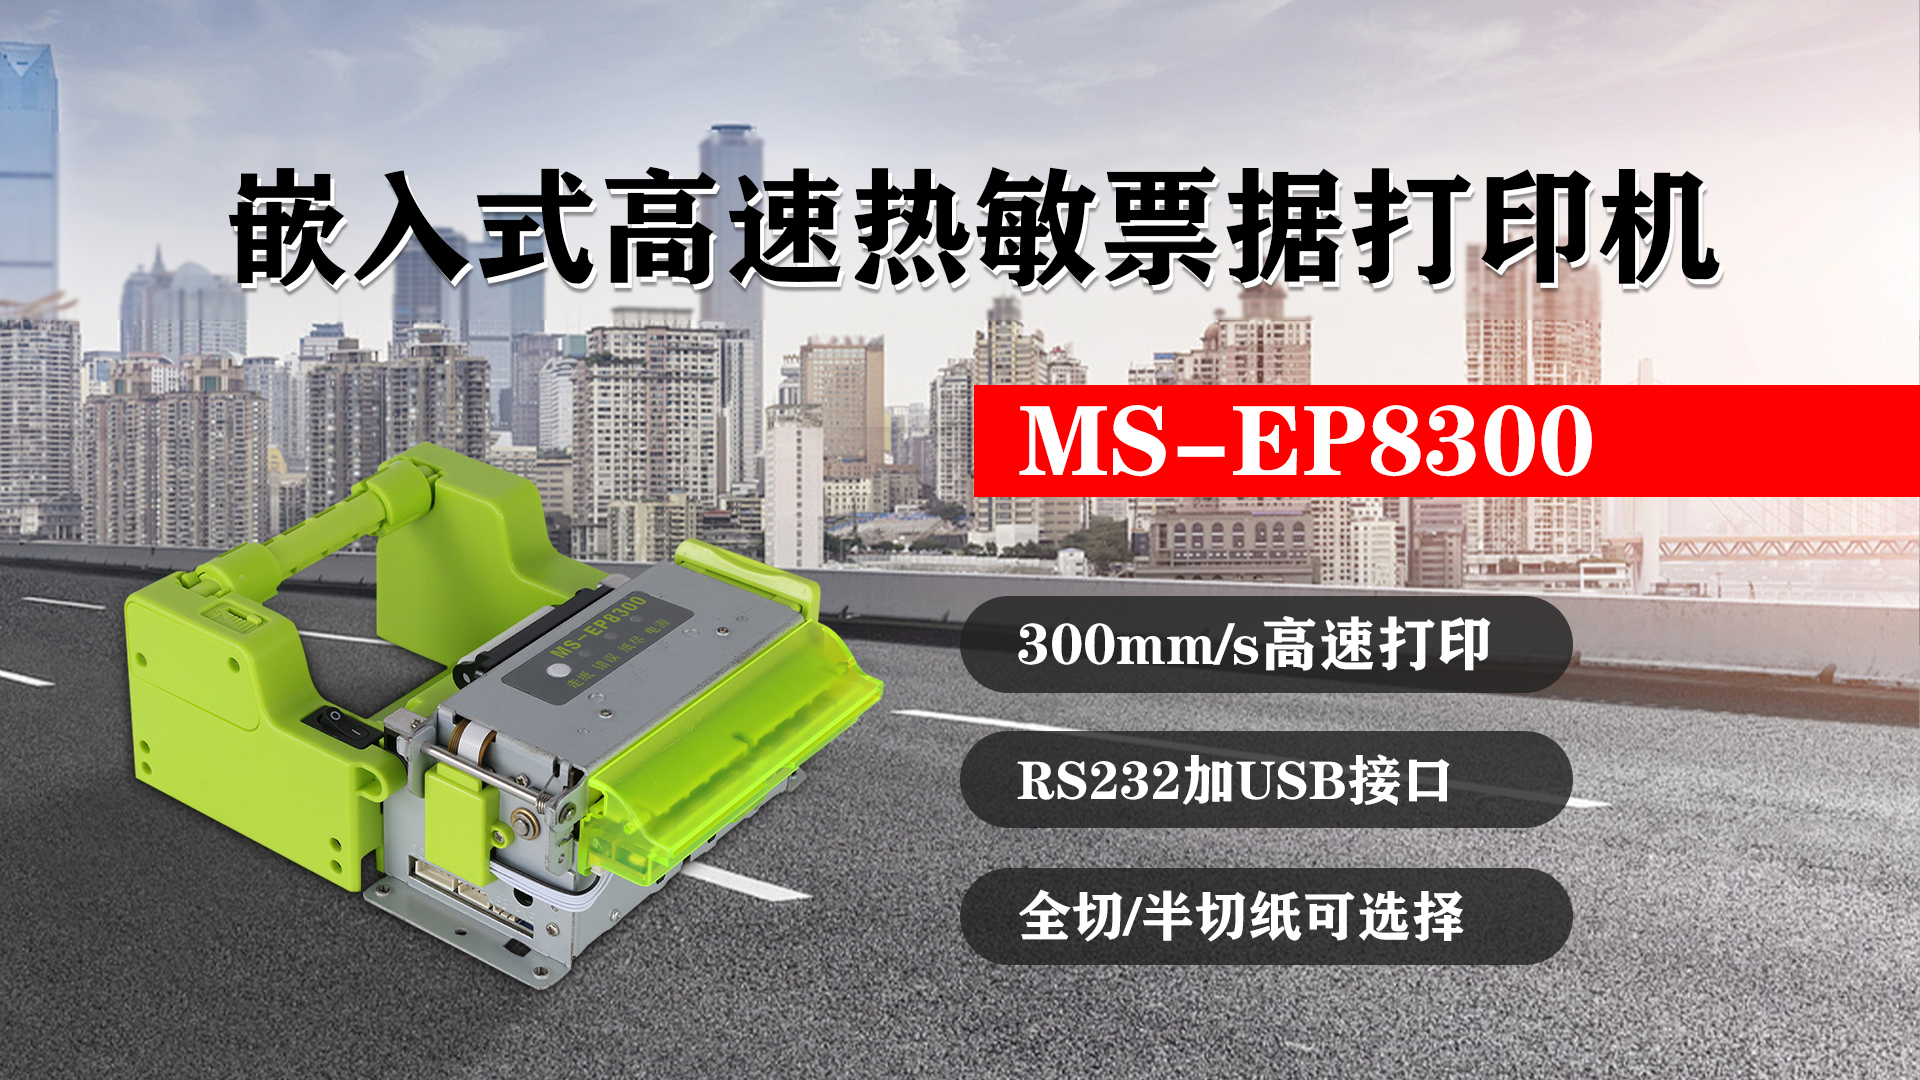 嵌入式高速热敏票据打印机MS-EP8300的特点，300mm/s高速打印，RS232接口加USB接口，全切/半切纸可选择